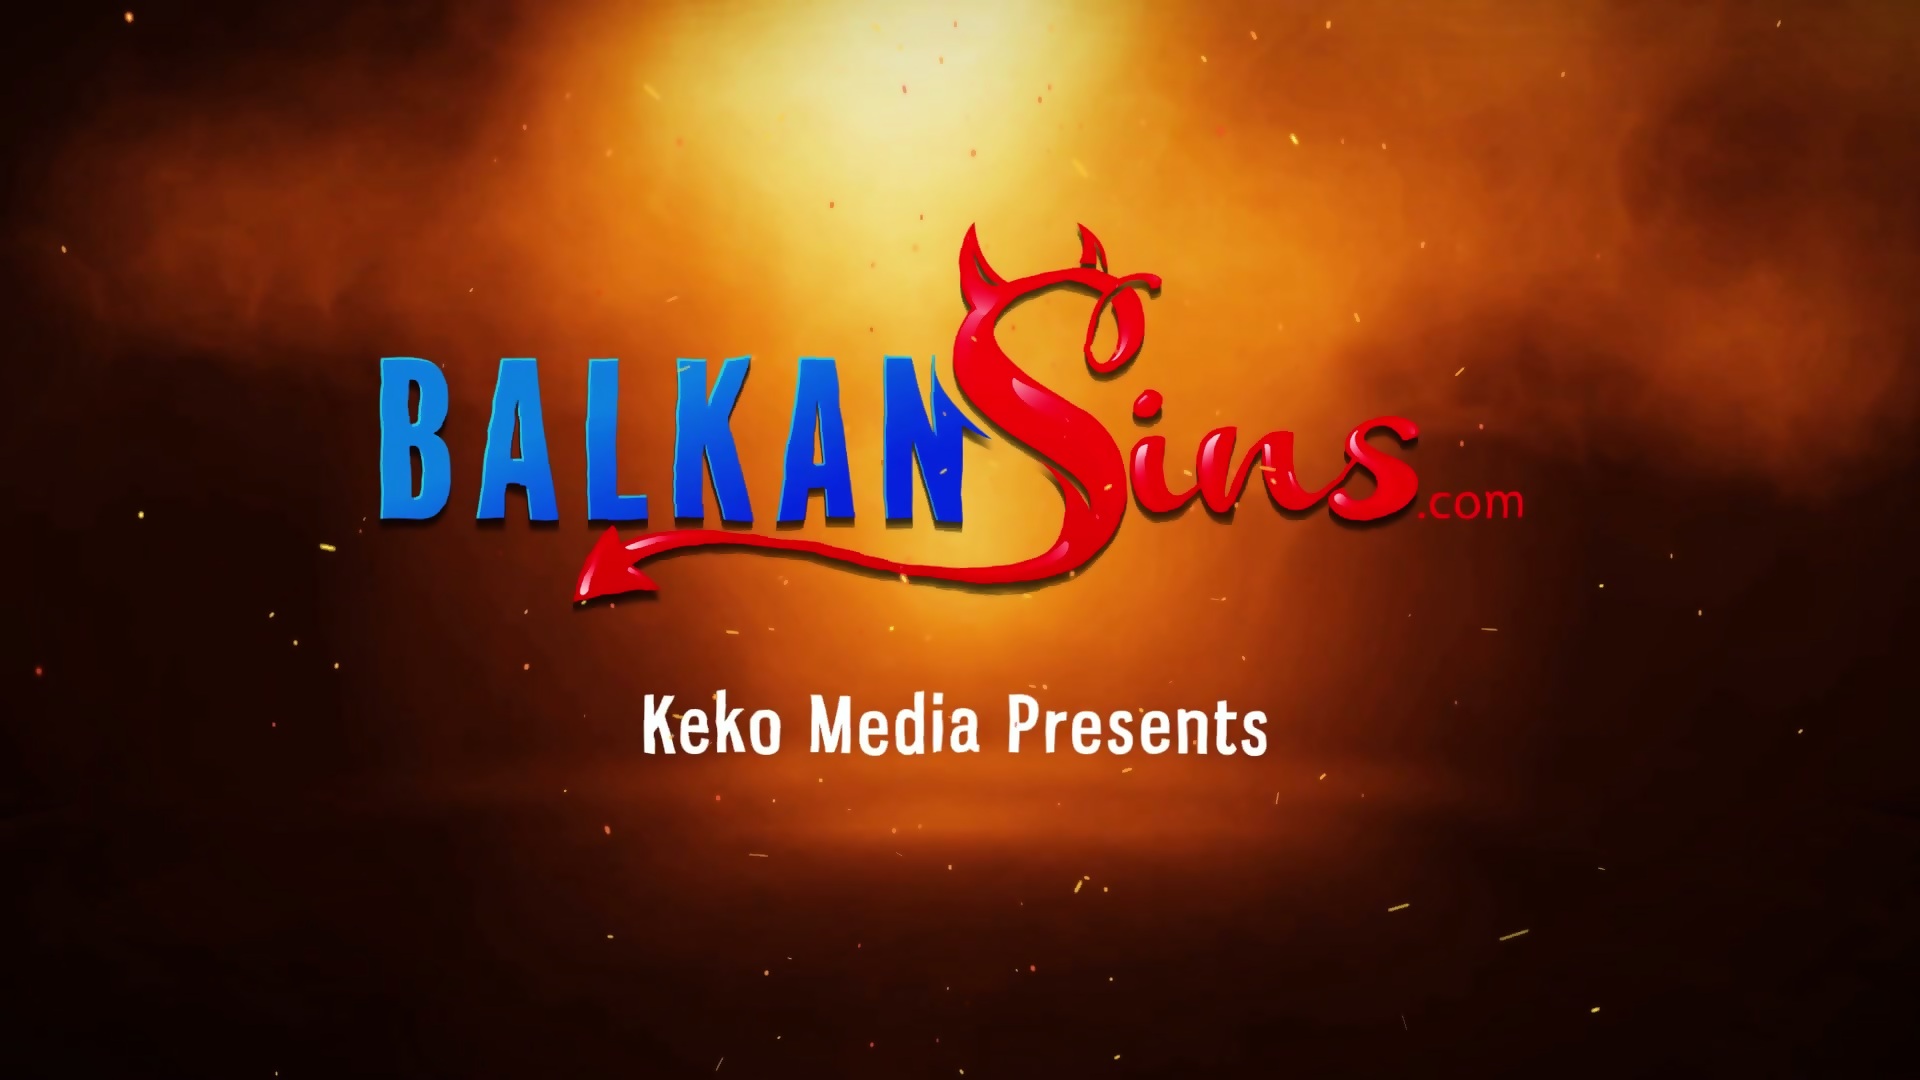 Balkan fest porno movies